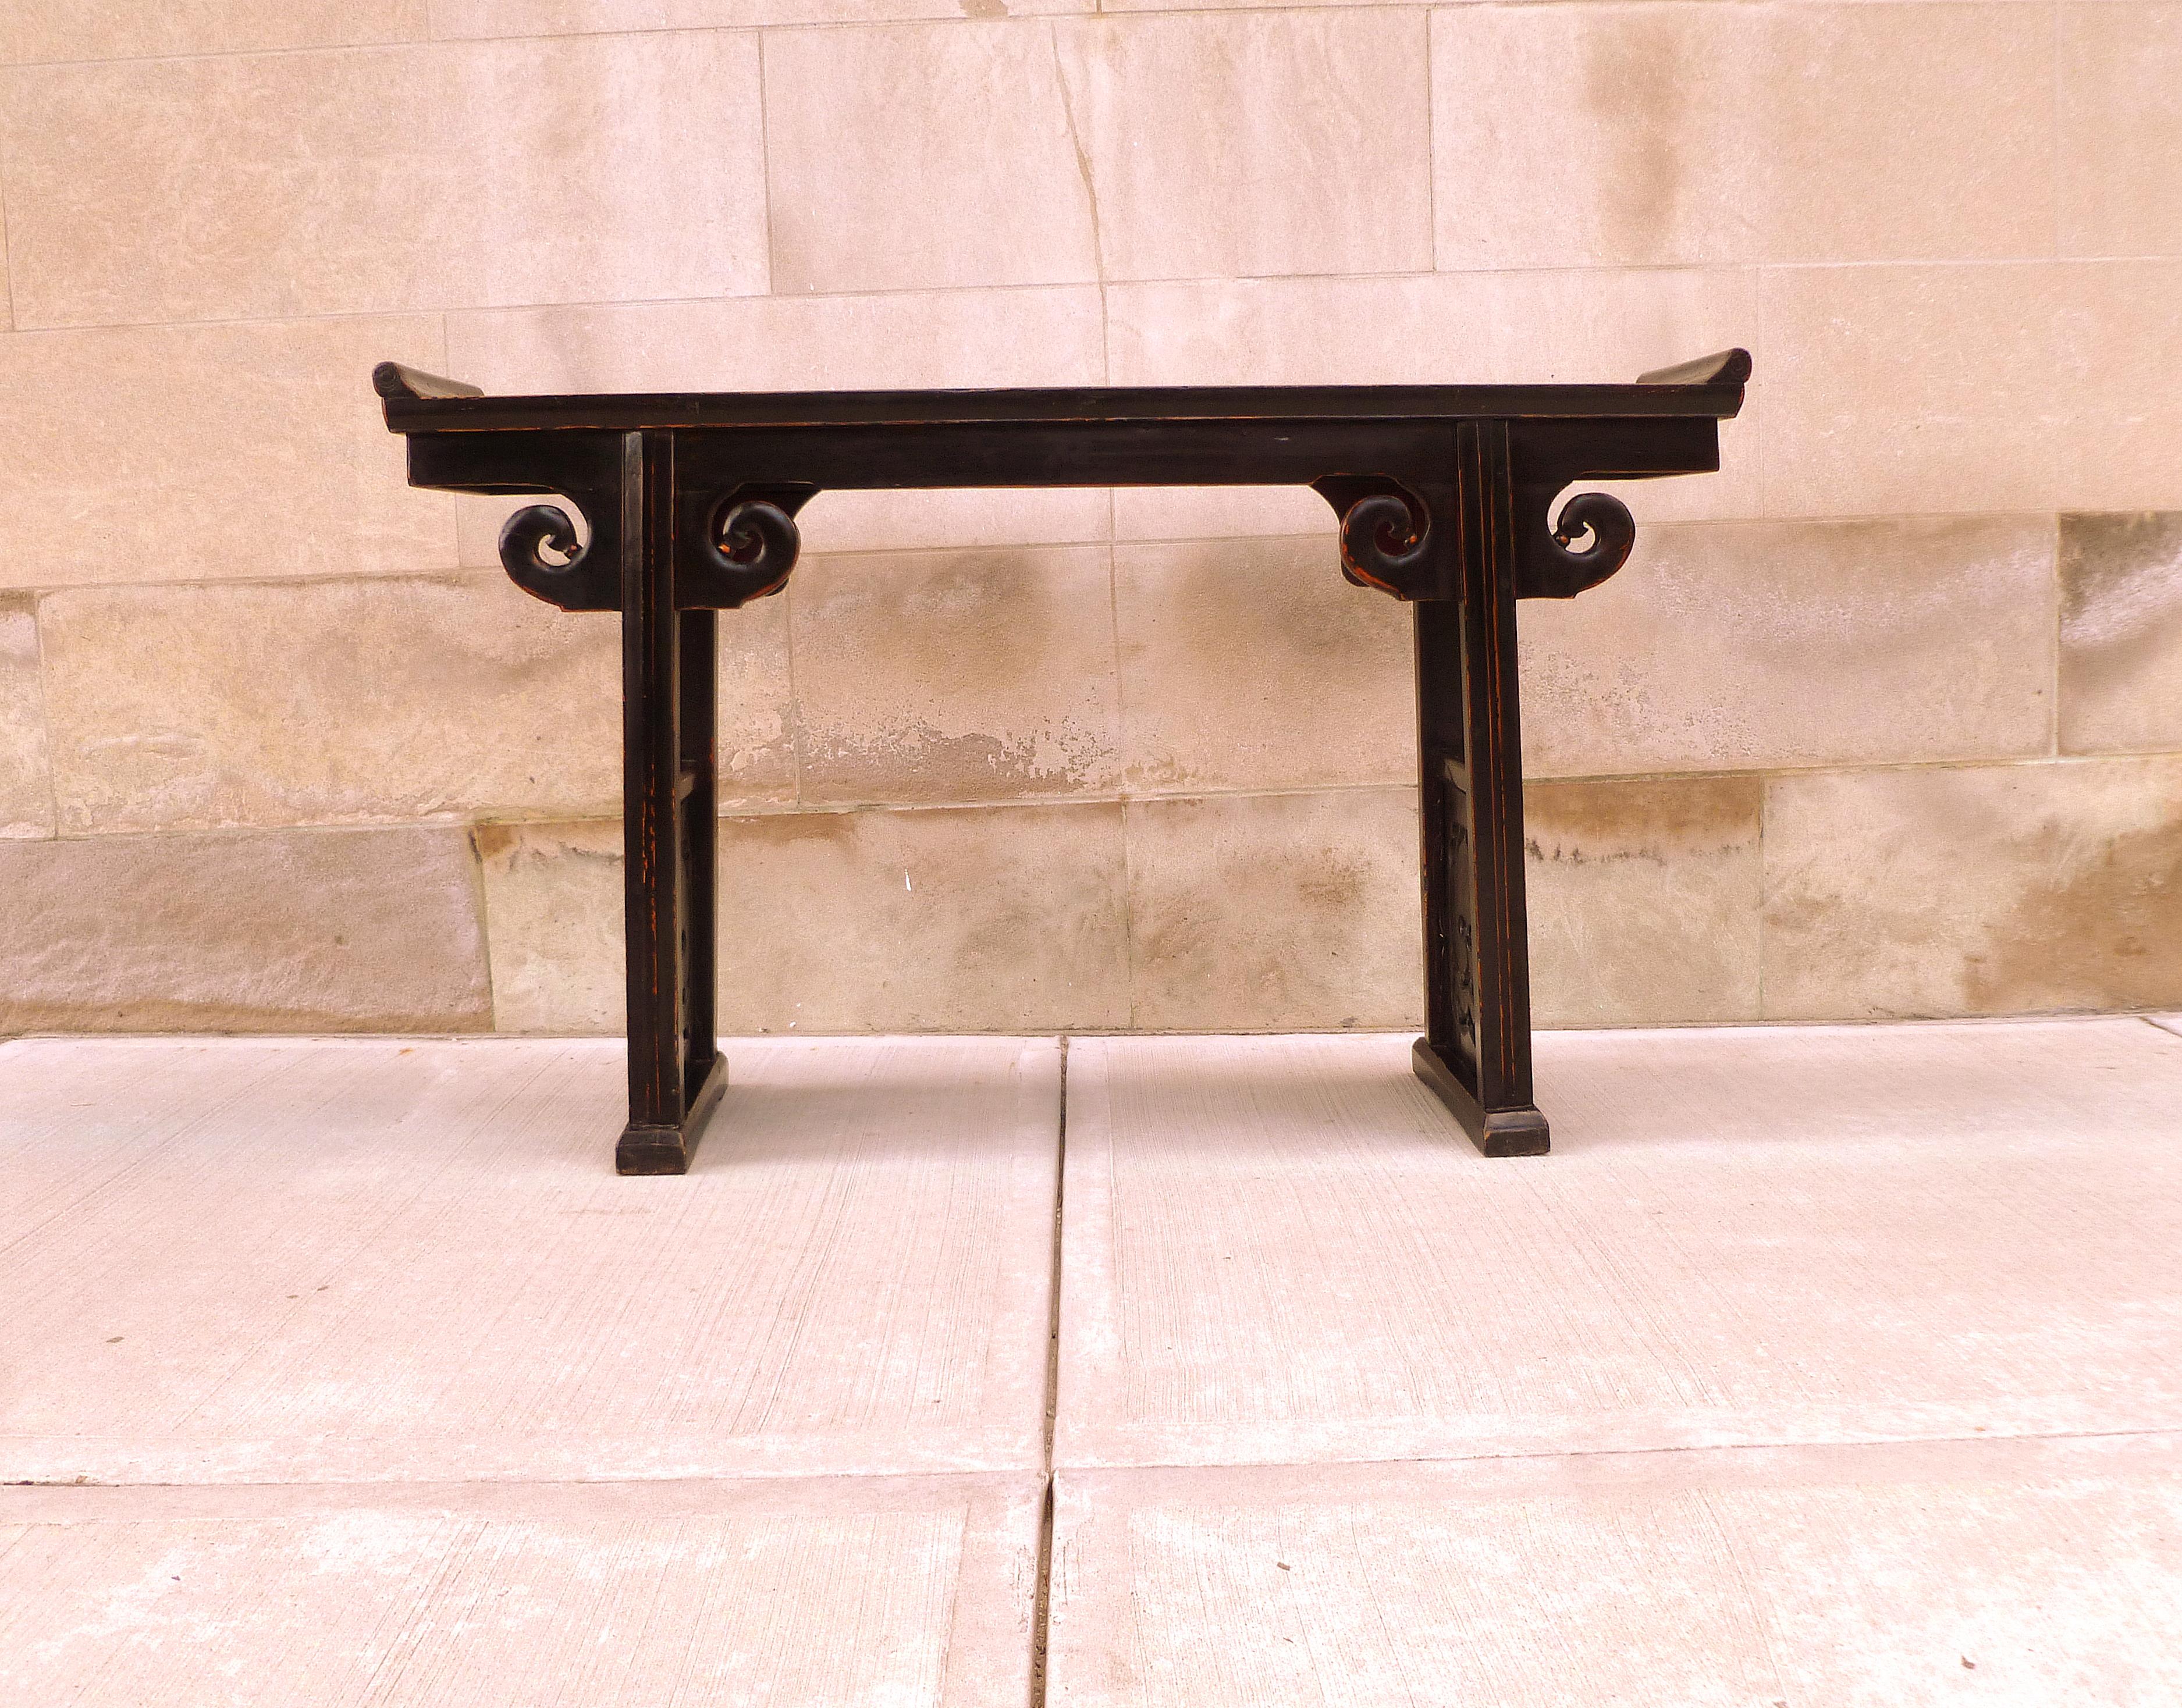 Schwarzer Lack Altartisch mit umgedrehten Flanschen mit glückverheißenden Design durchbohren Schnitzerei Seitenwände.